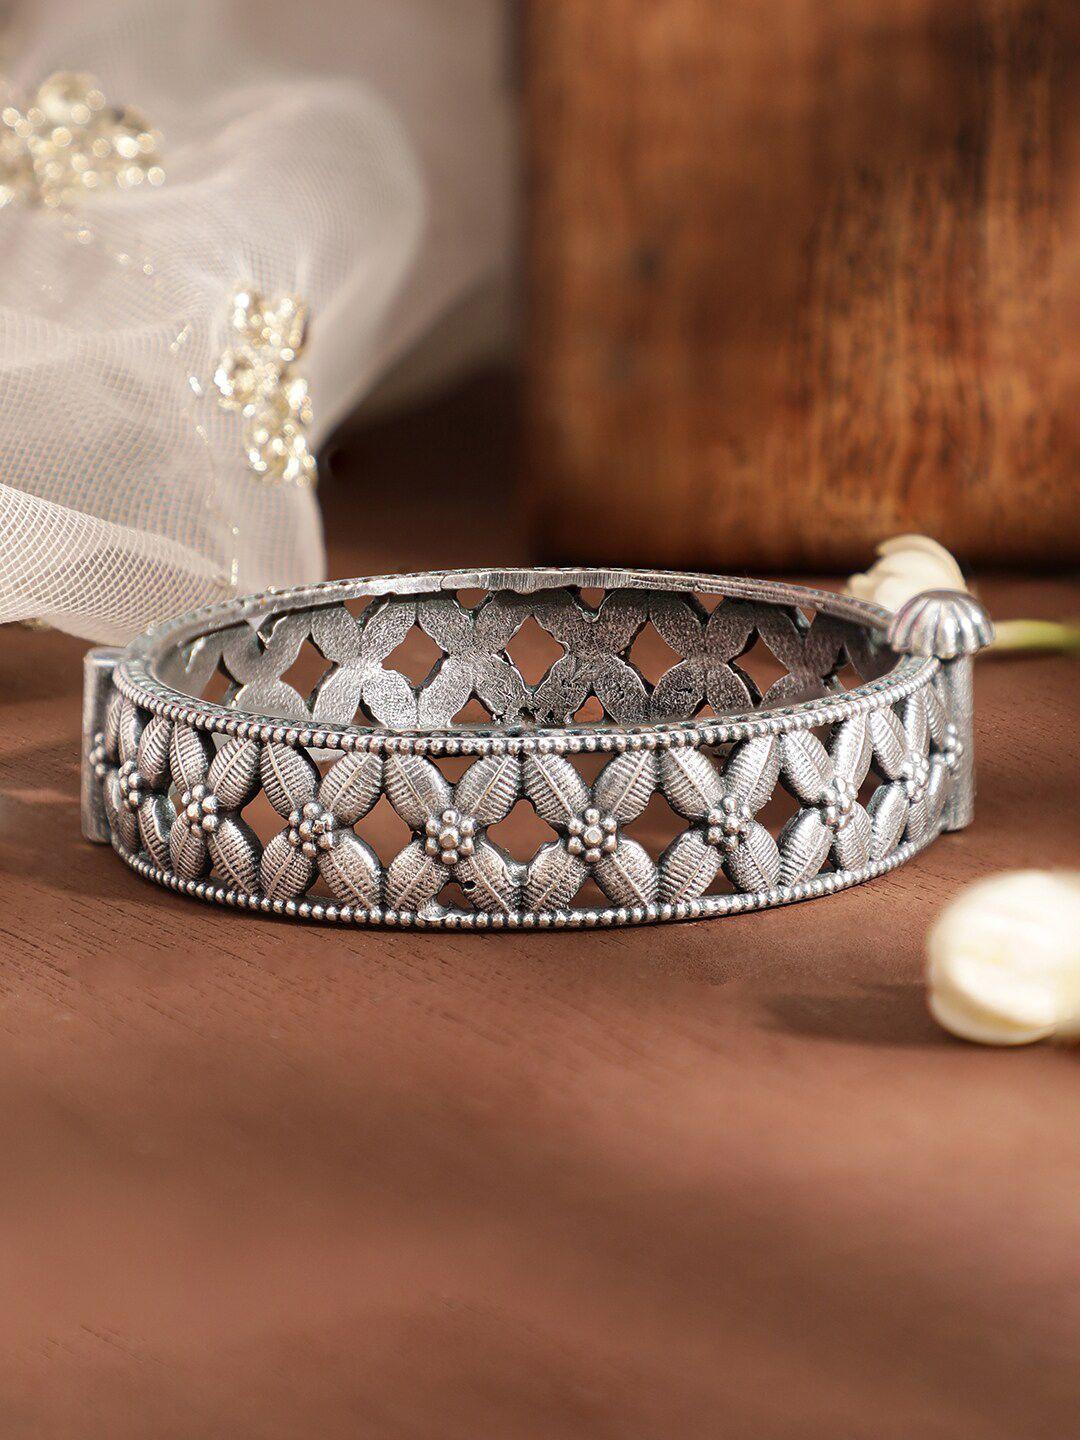 rubans voguish women bangle-style bracelet